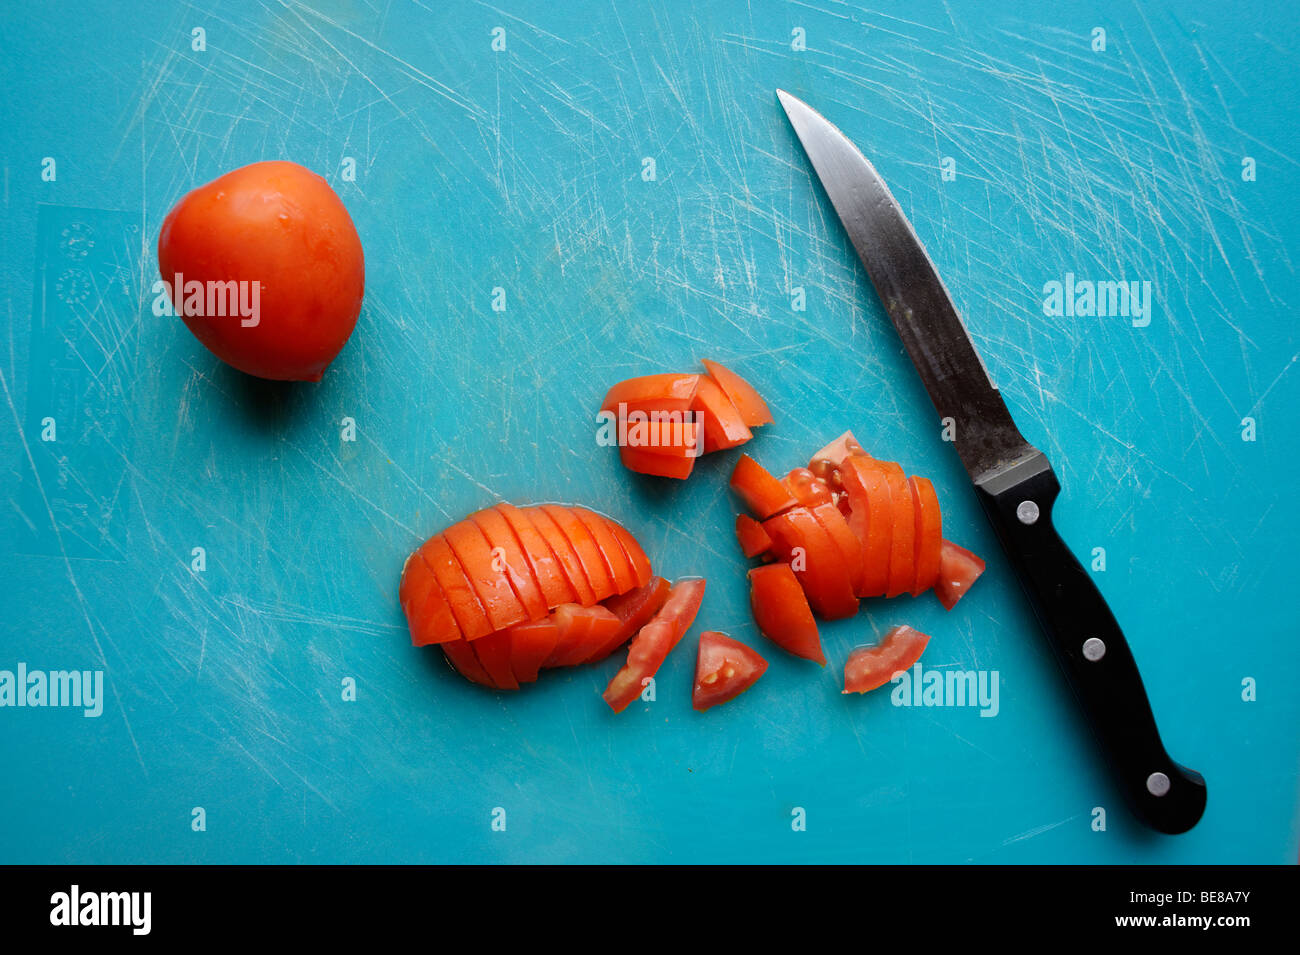 Des dés de tomates sur la planche à découper en plastique bleu avec couteau et repères de découpe. Banque D'Images